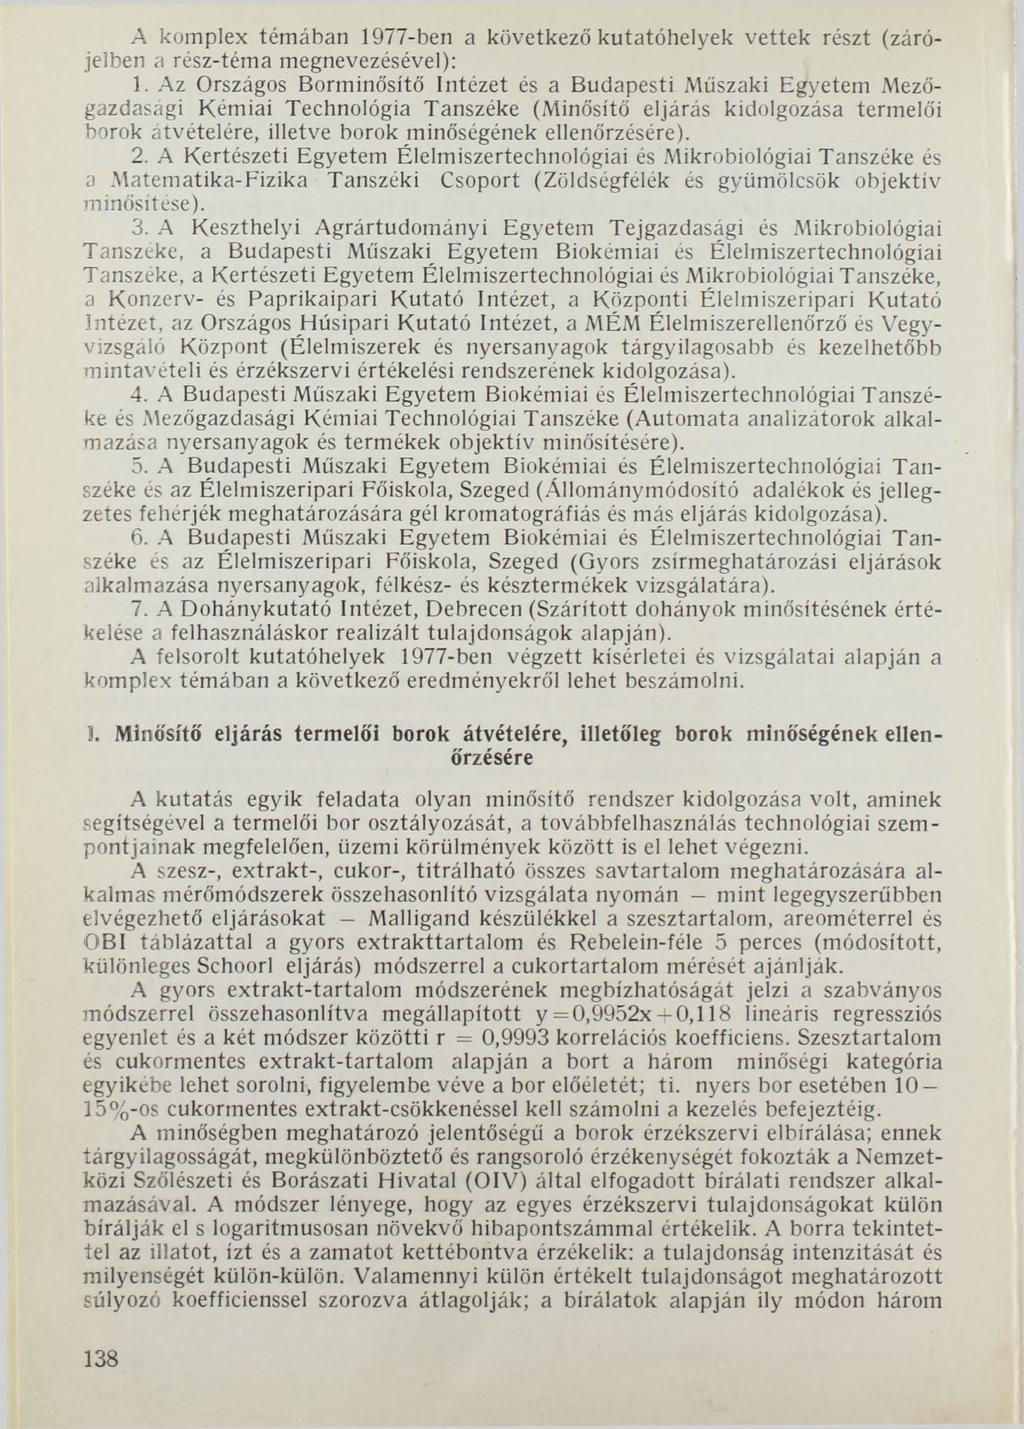 A komplex témában 1977-ben a következő kutatóhelyek vettek részt (zárójelben a rész-téma megnevezésével): 1.